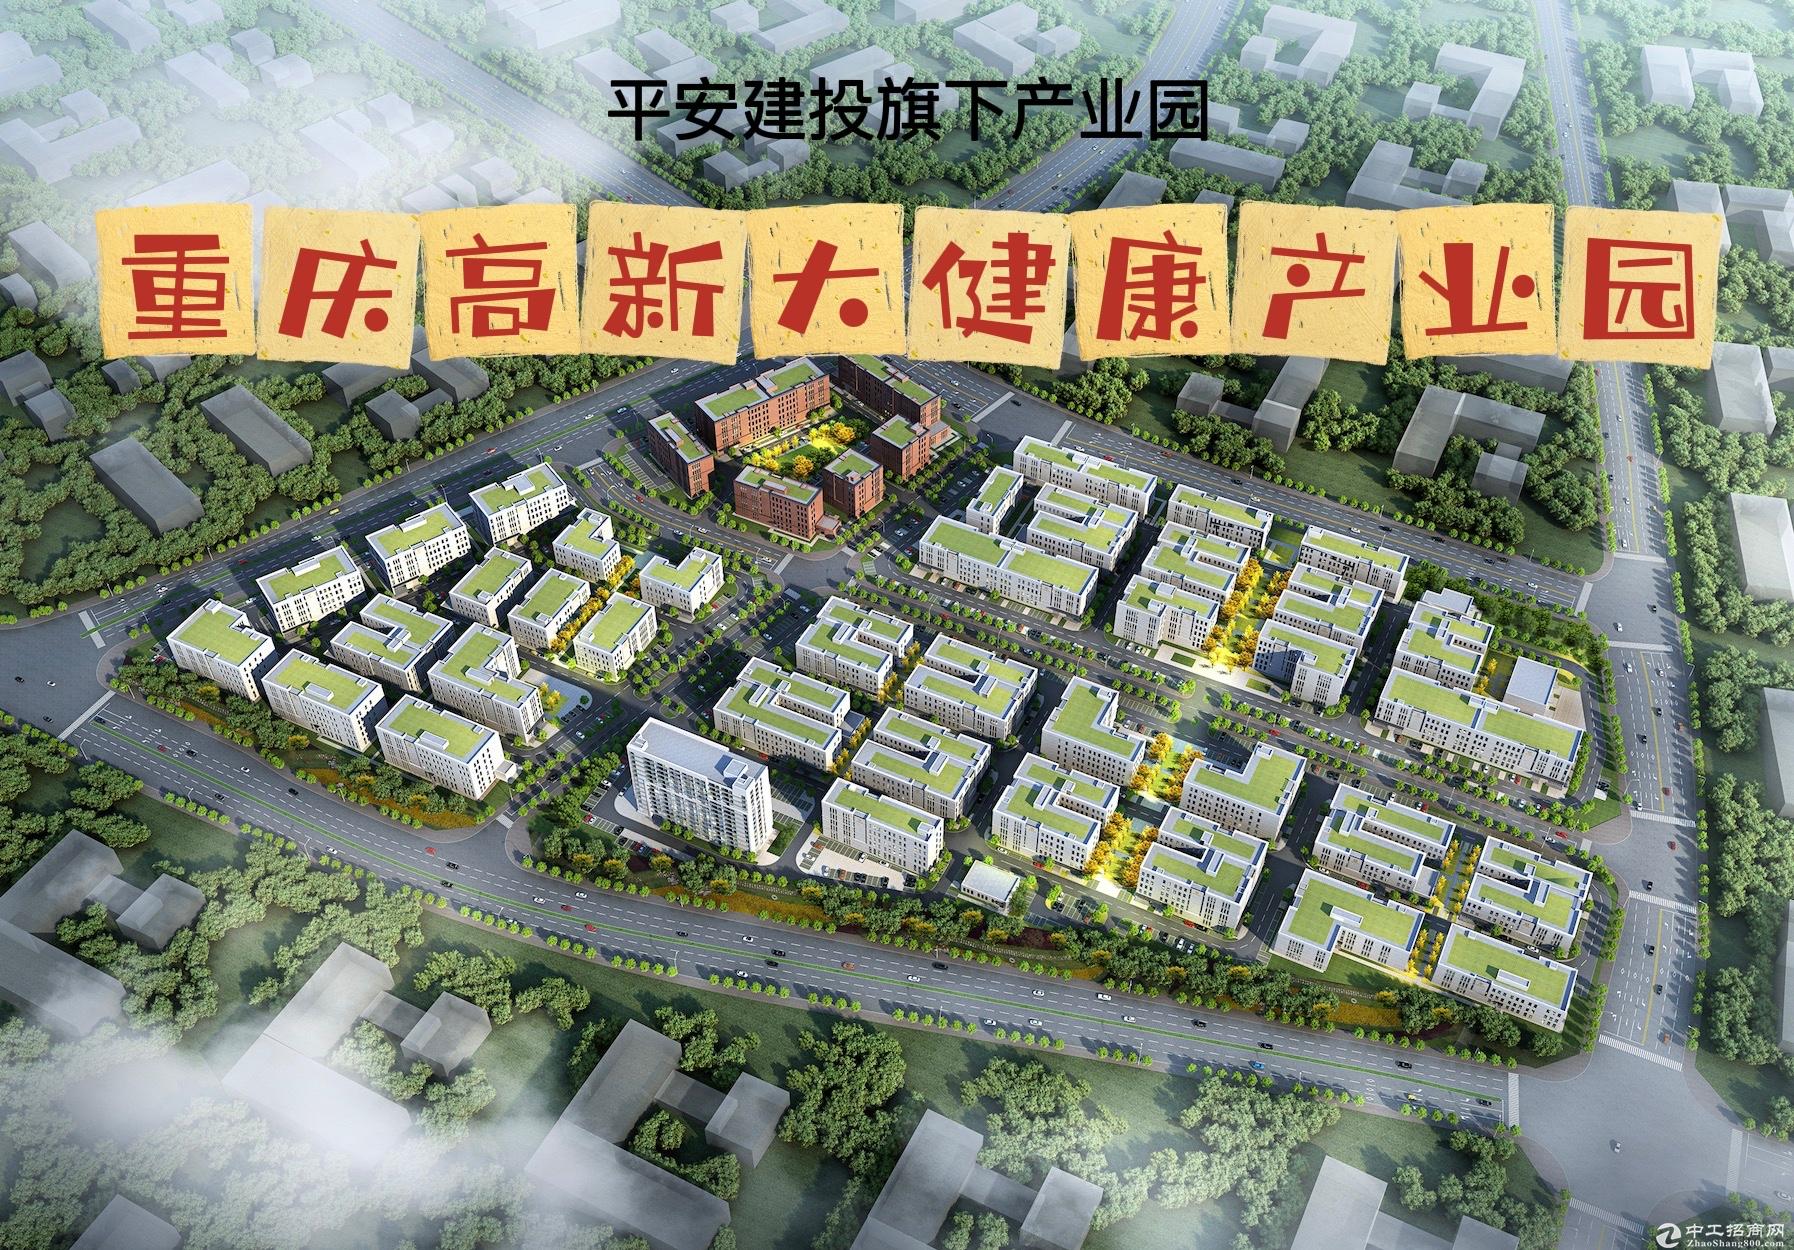 重庆高新区现房厂房招商—生物医药、医疗器械、智能制造